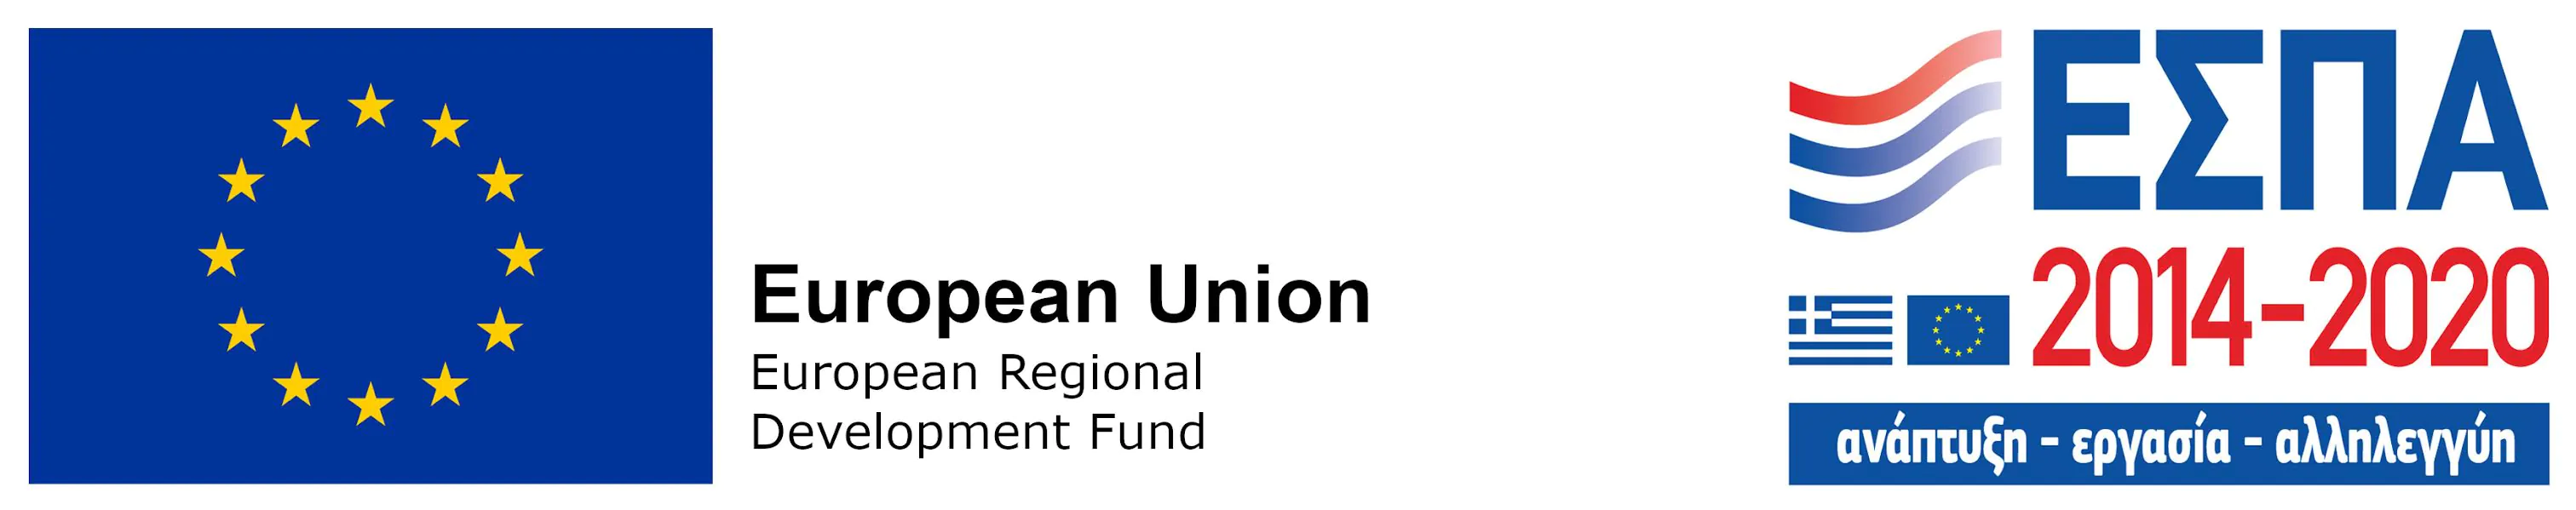 European Union	European Regional	Development Fund